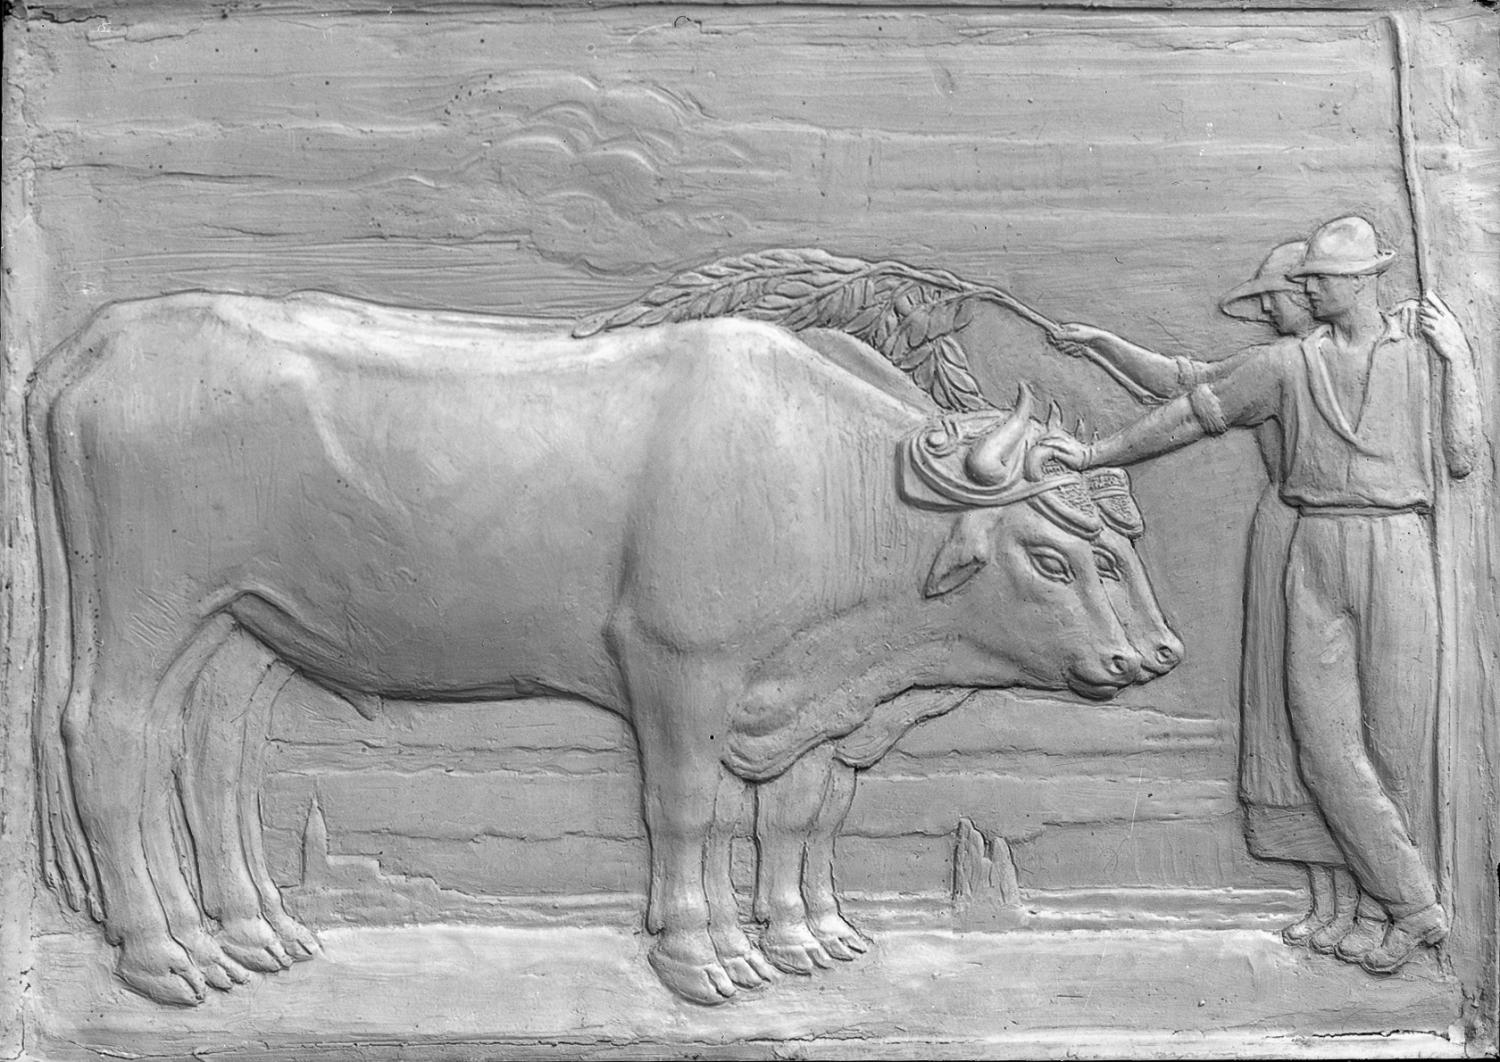 [Ecole d'agriculture de Cibeins : "Les Boeufs", bas-relief monumental]